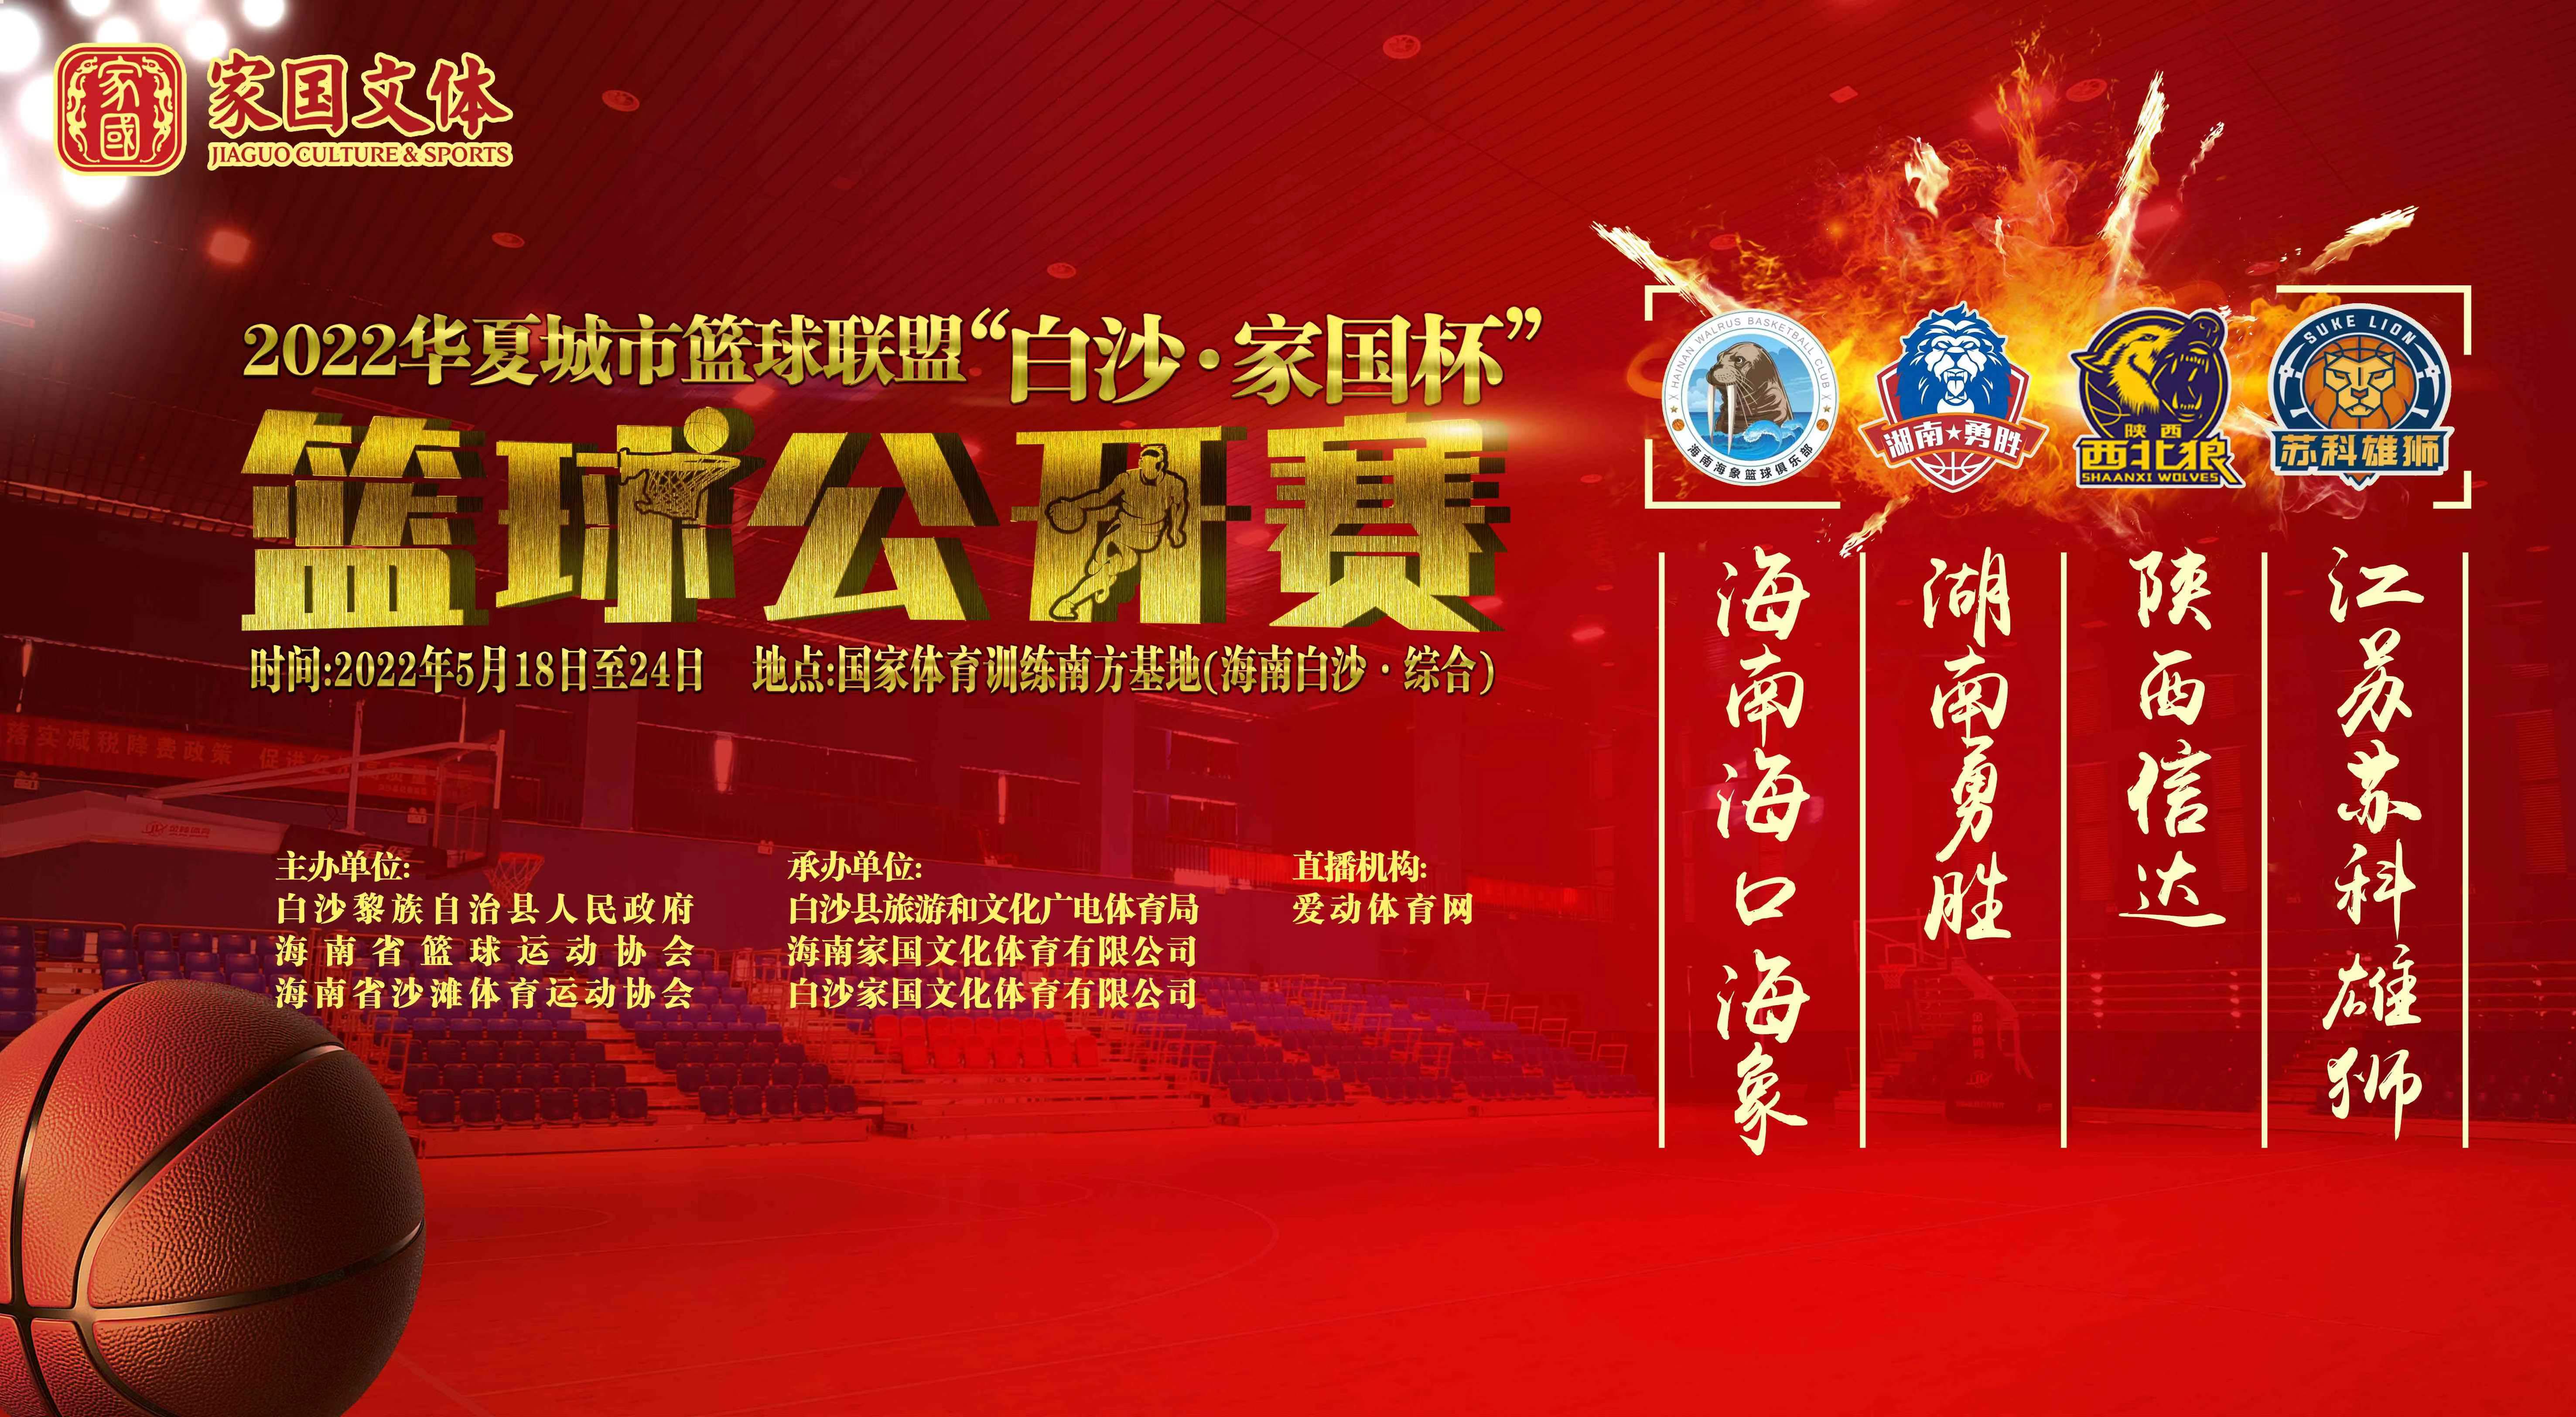 2022华夏城市篮球联盟“白沙·家国杯”篮球公开赛 5月20日